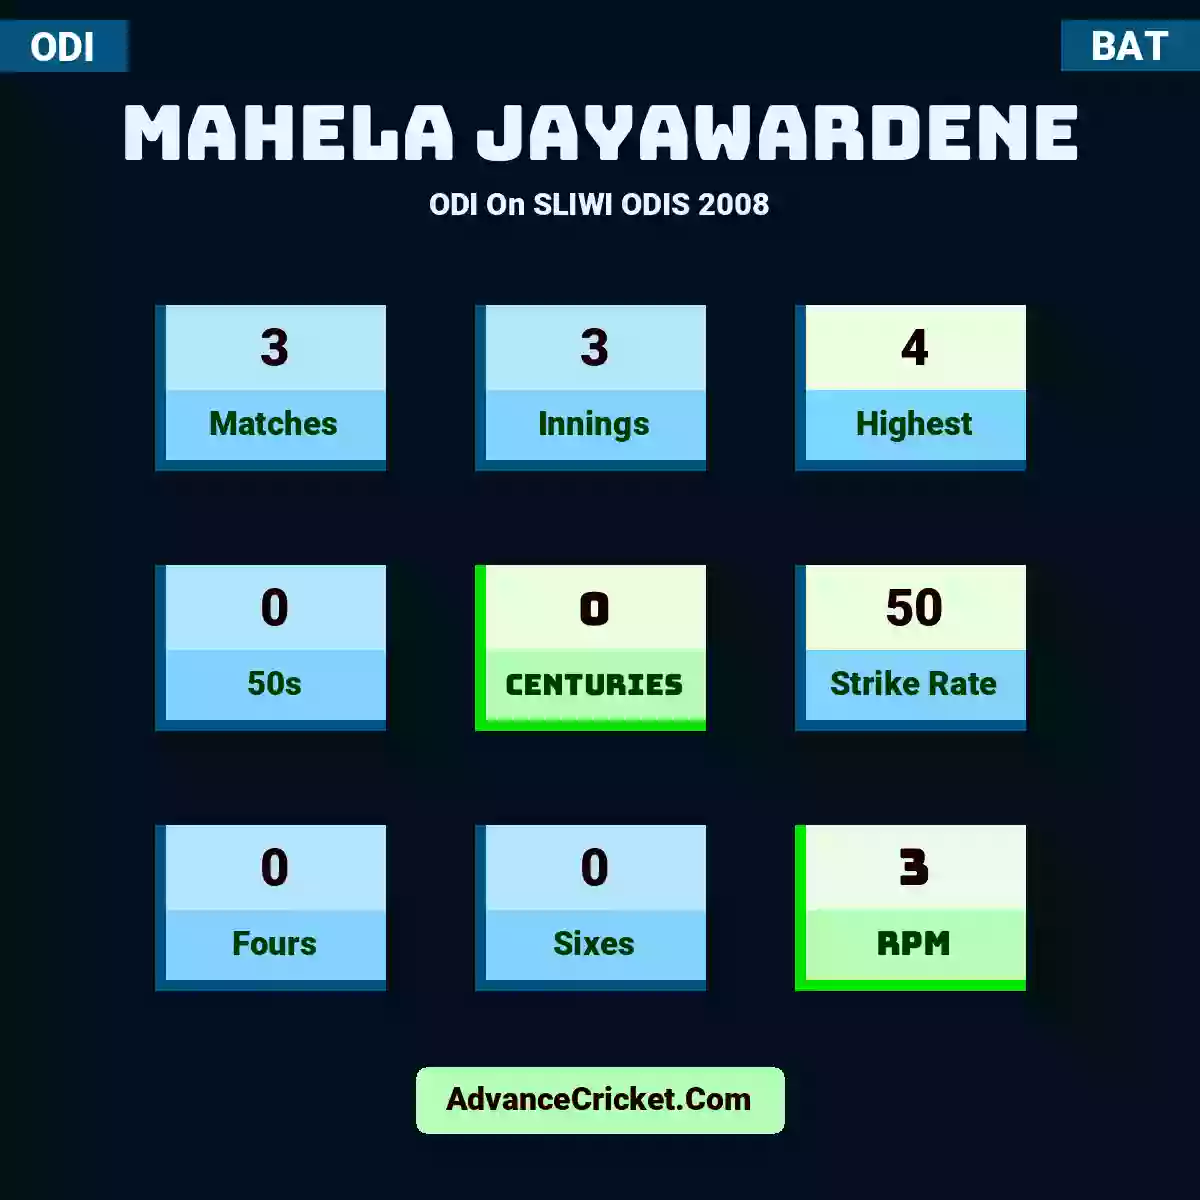 Mahela Jayawardene ODI  On SLIWI ODIS 2008, Mahela Jayawardene played 3 matches, scored 4 runs as highest, 0 half-centuries, and 0 centuries, with a strike rate of 50. M.Jayawardene hit 0 fours and 0 sixes, with an RPM of 3.